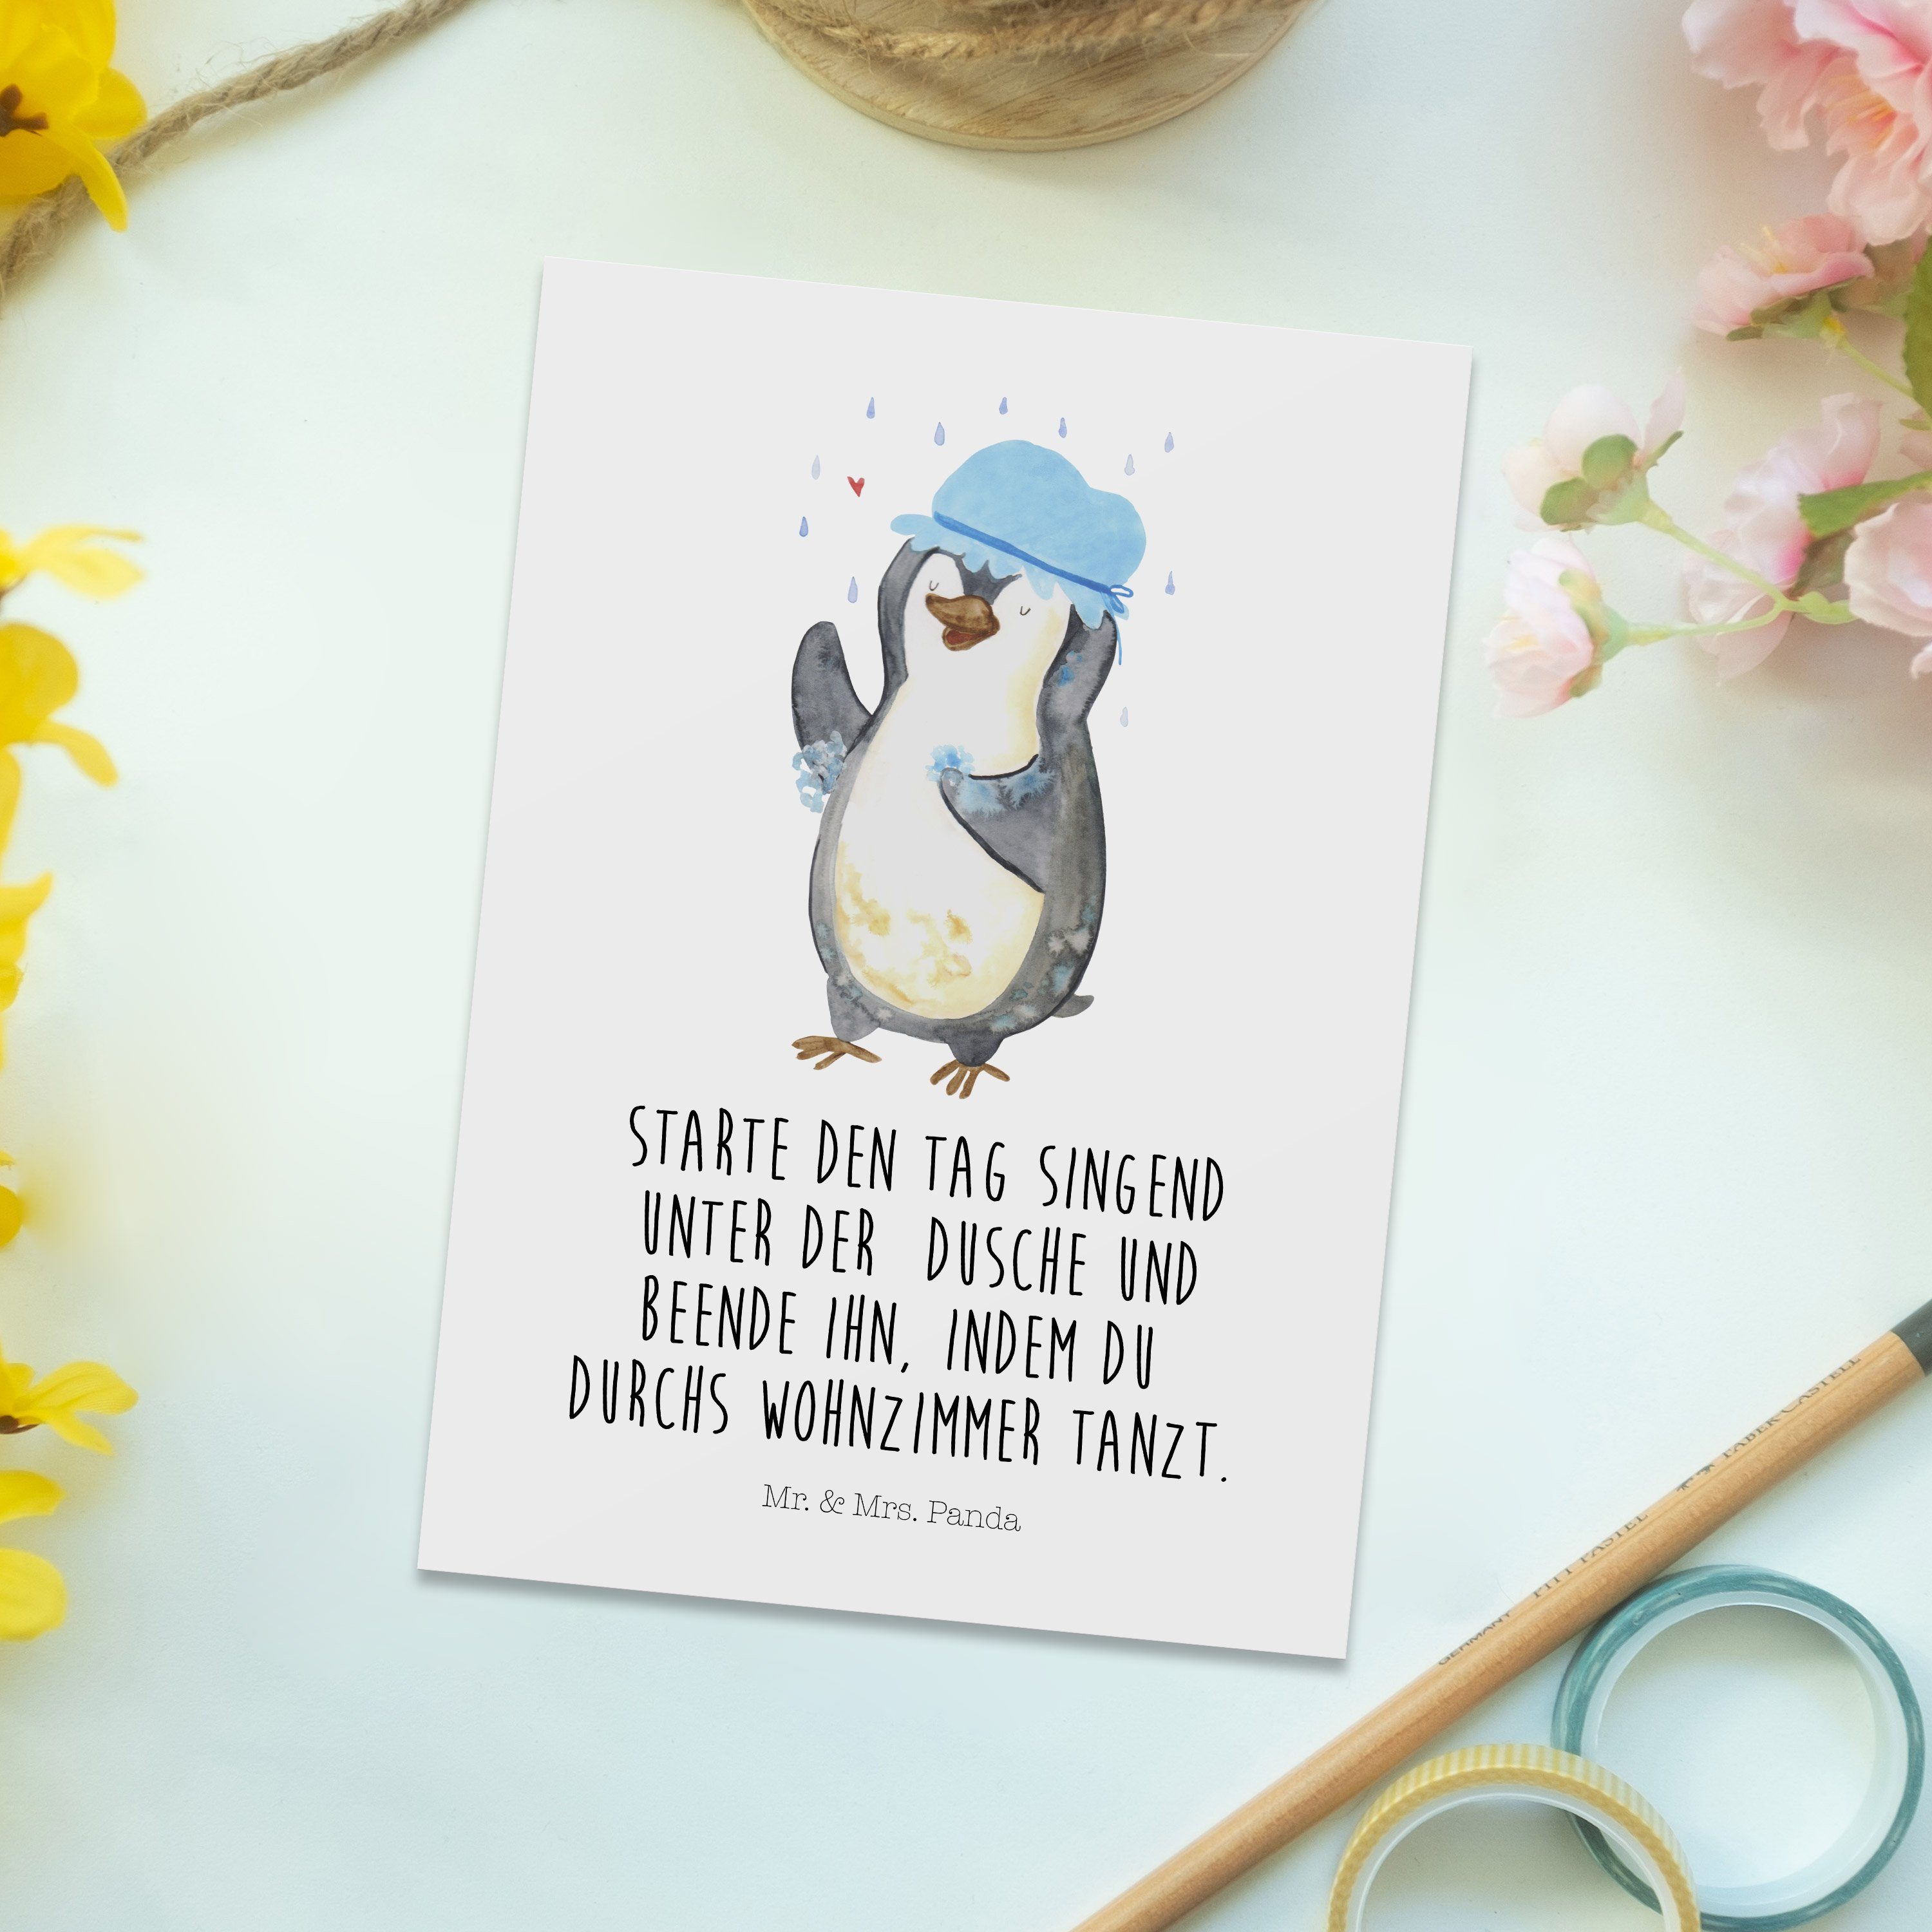 Mr. & Mrs. Panda G duschen, Lebensmotto, - Postkarte duscht Motivation, Geschenk, Weiß Pinguin 